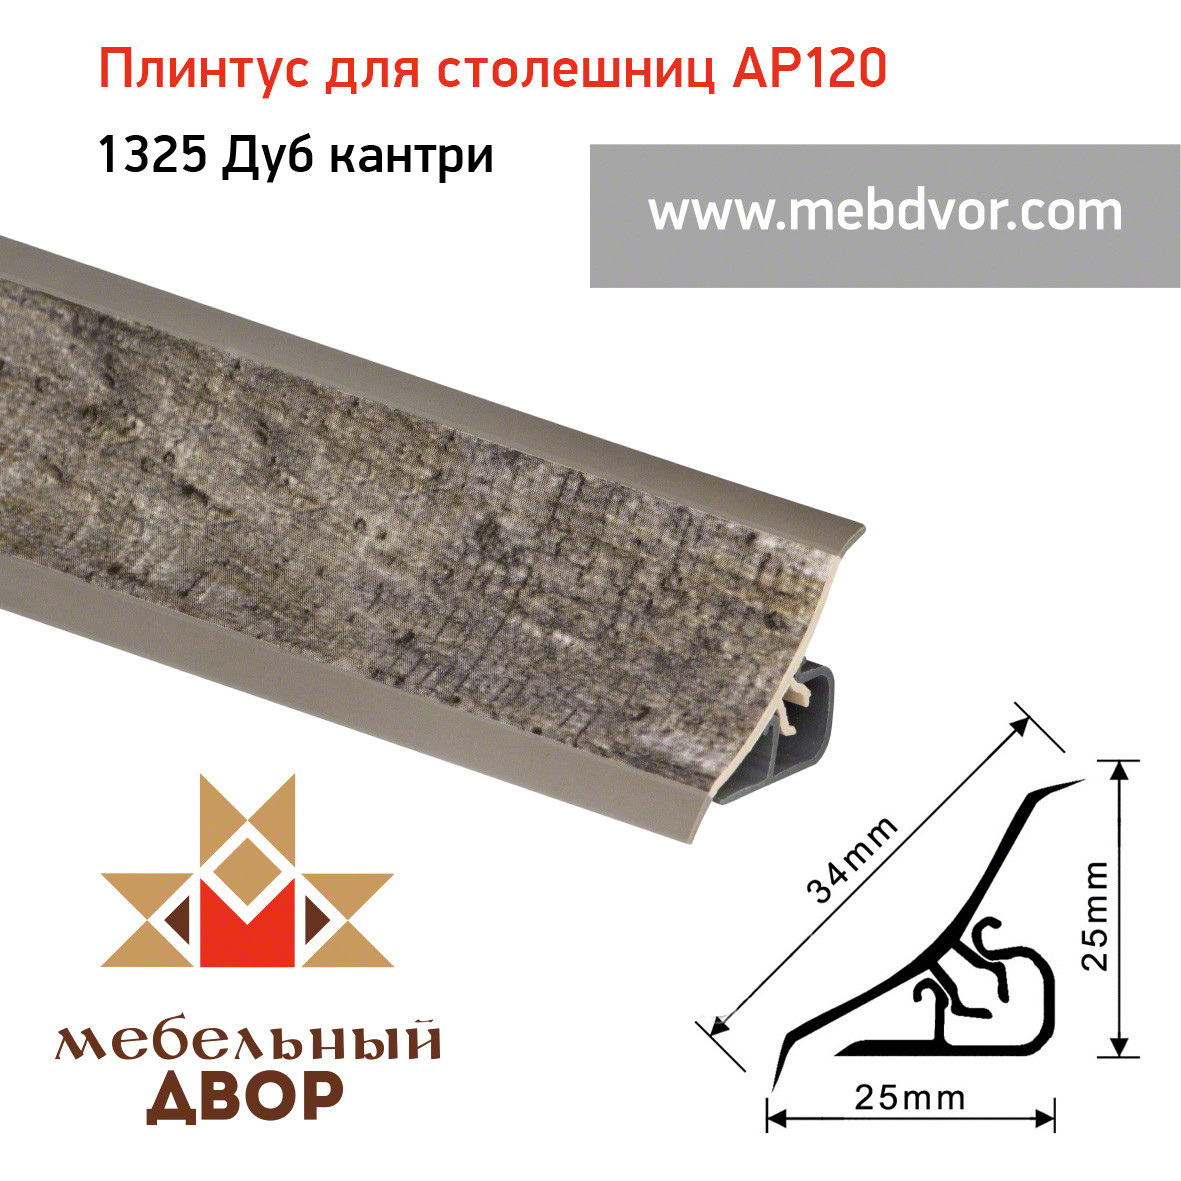 Плинтус для столешниц AP120 (1325_Дуб кантри), 3000 mm